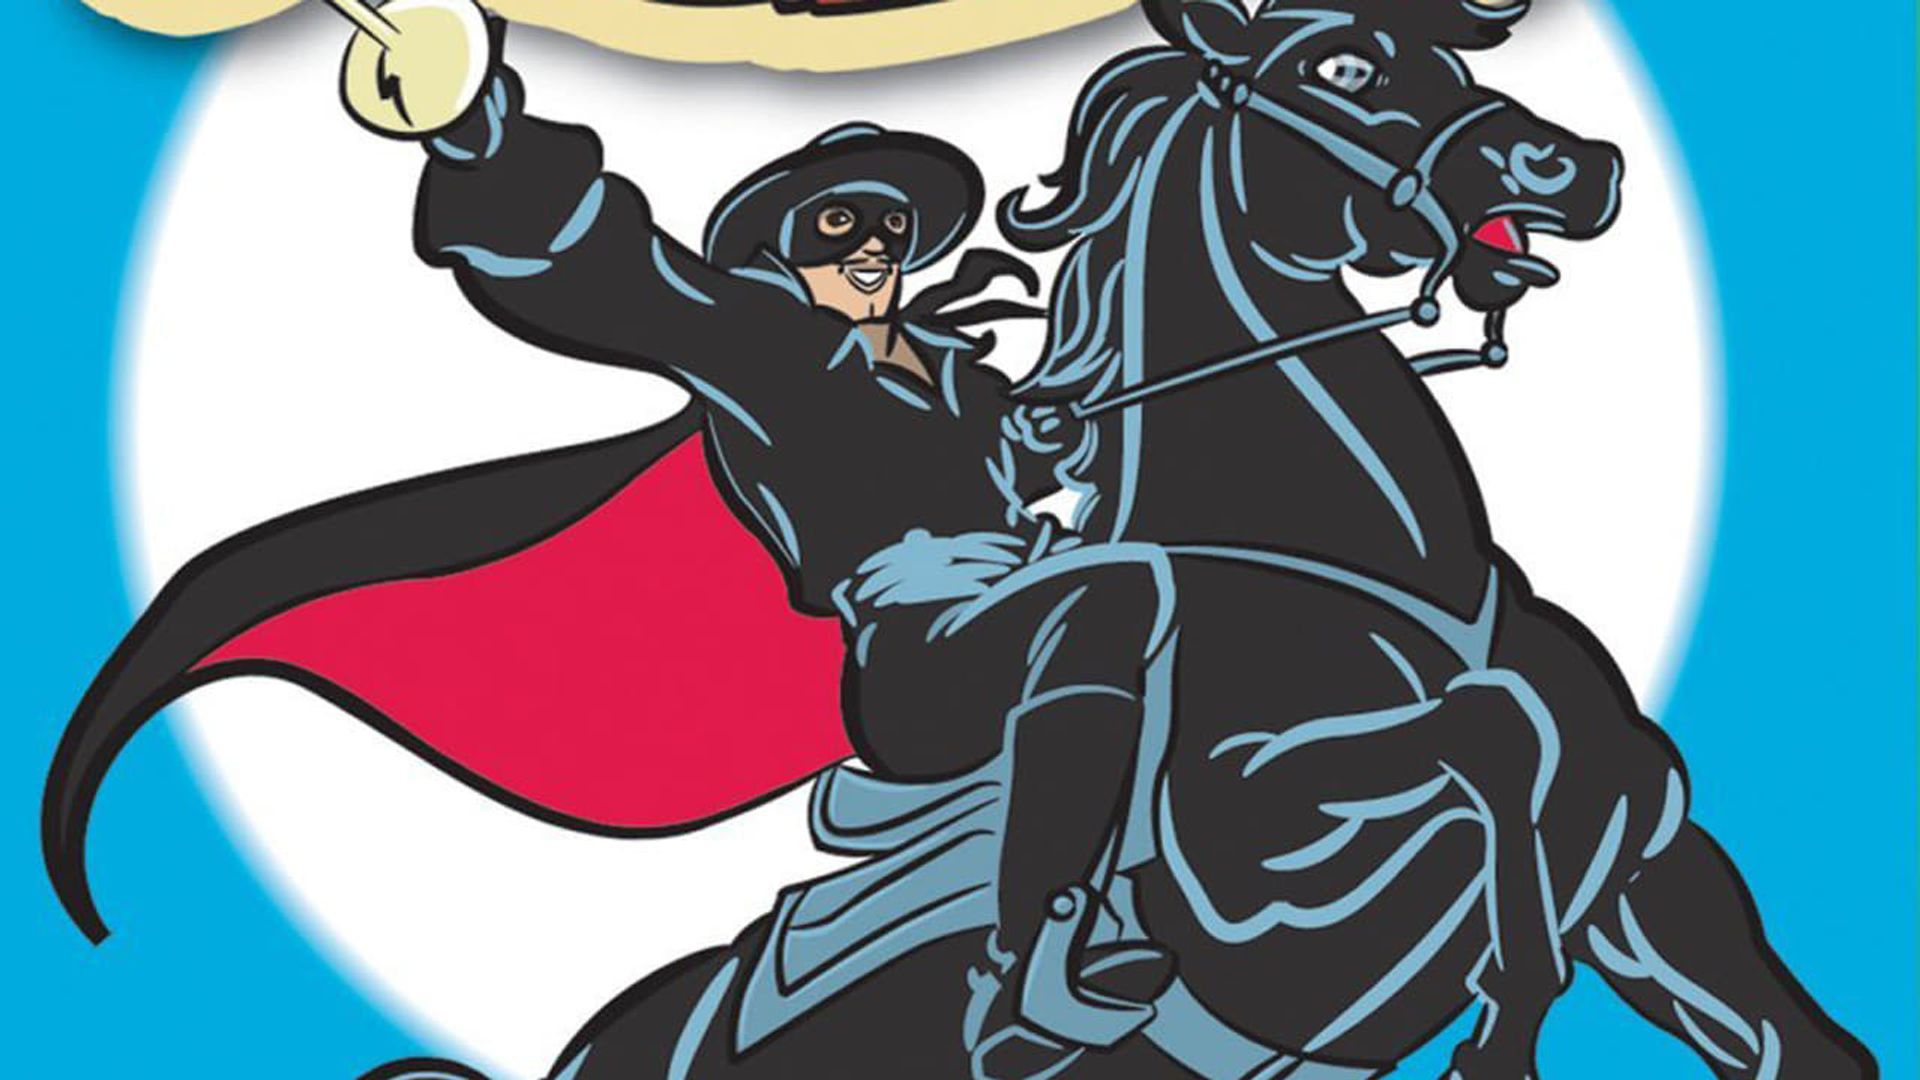 The New Adventures of Zorro background